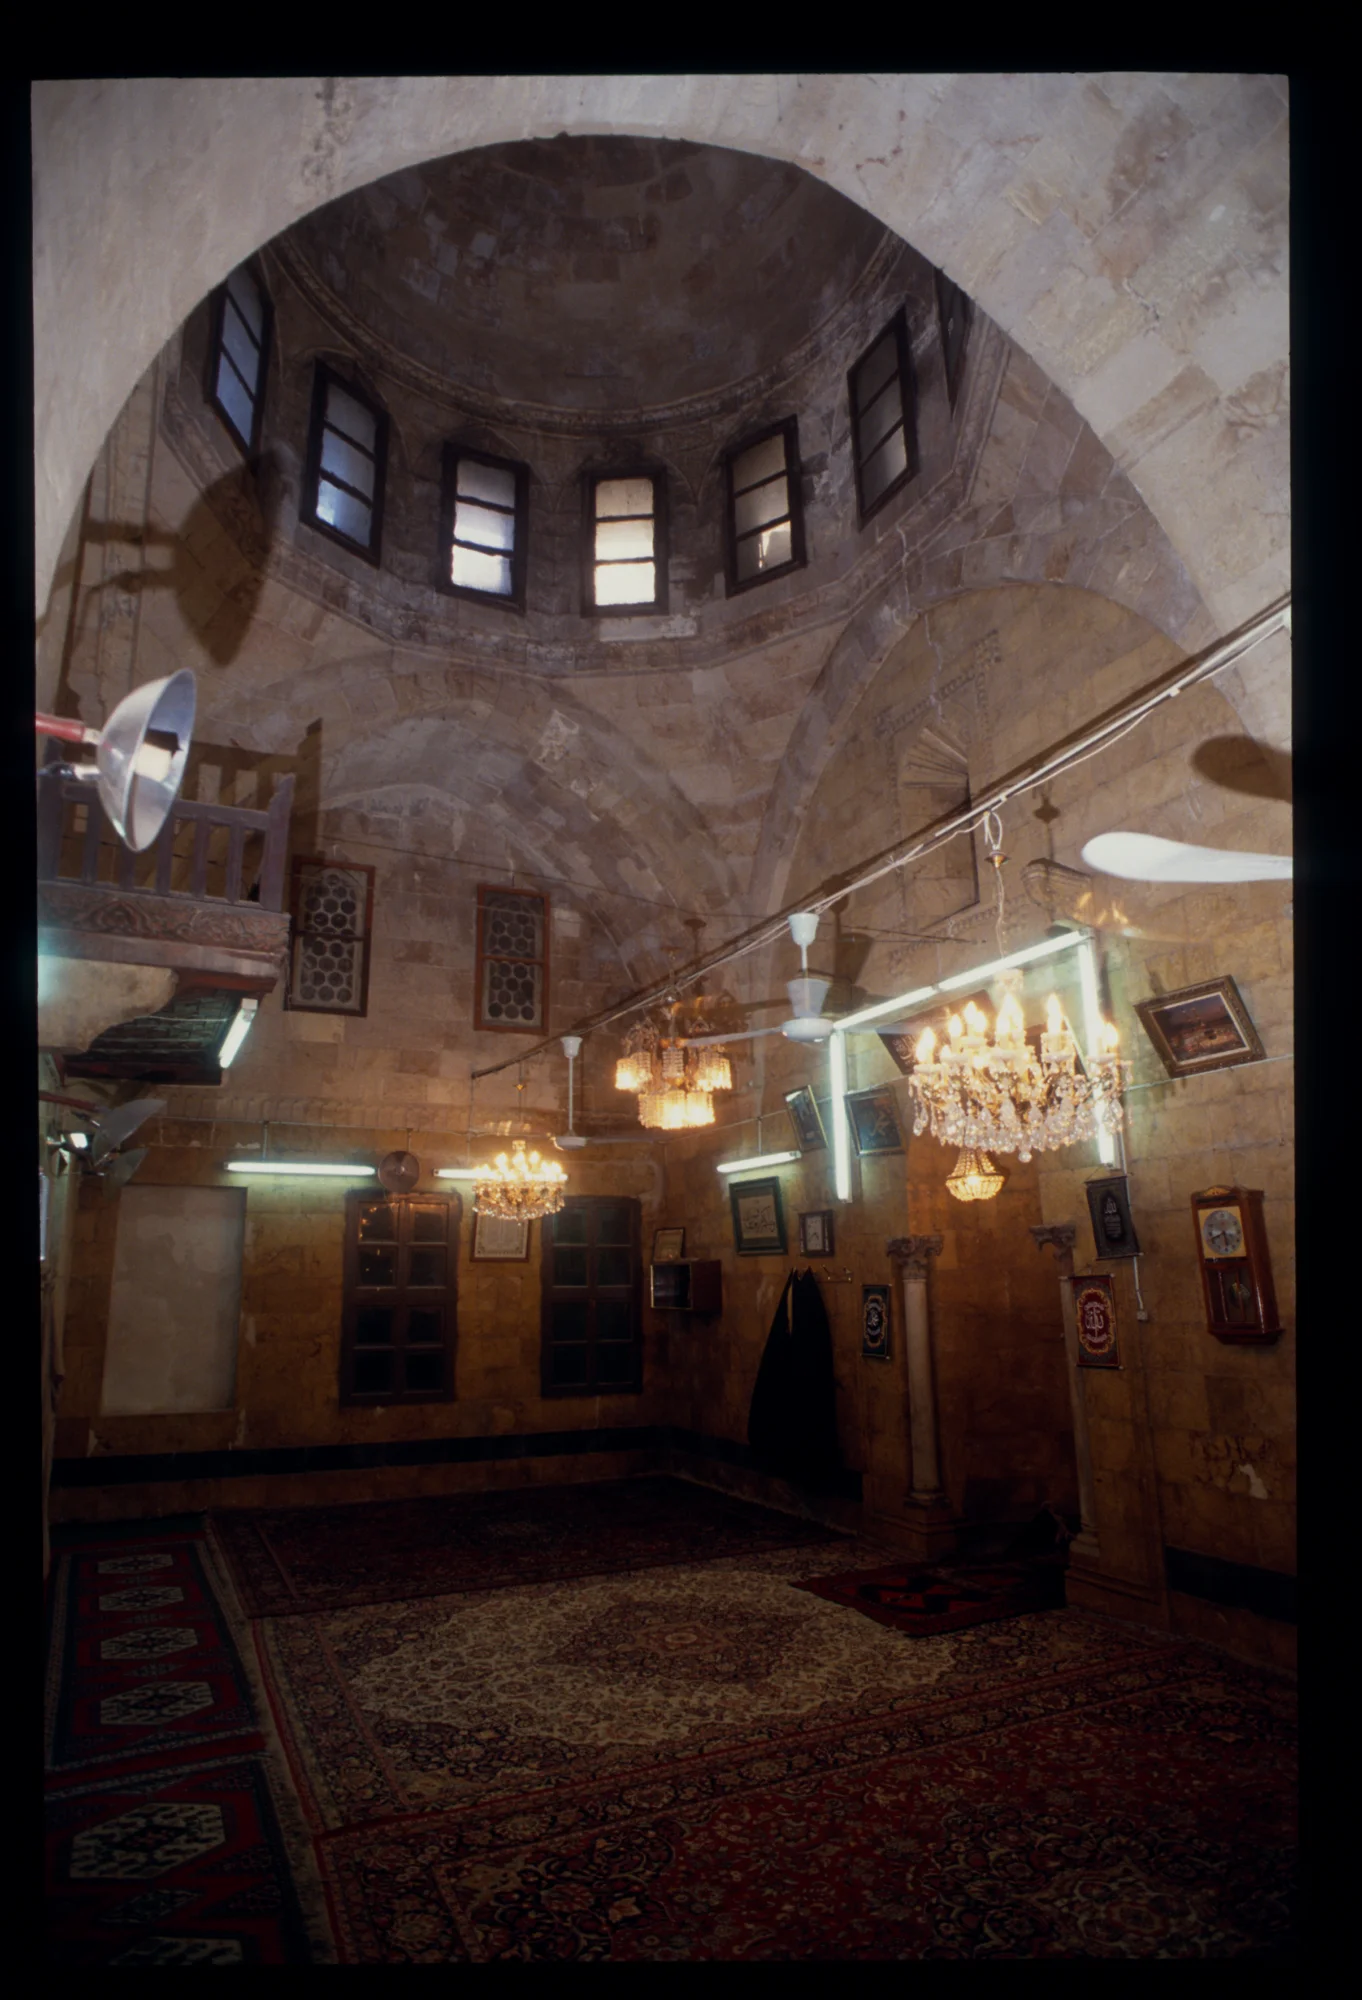 جامع أصلان دادا, مشهد داخلي لقاعة الصلاة (القبلية) يظهر فيها المحراب